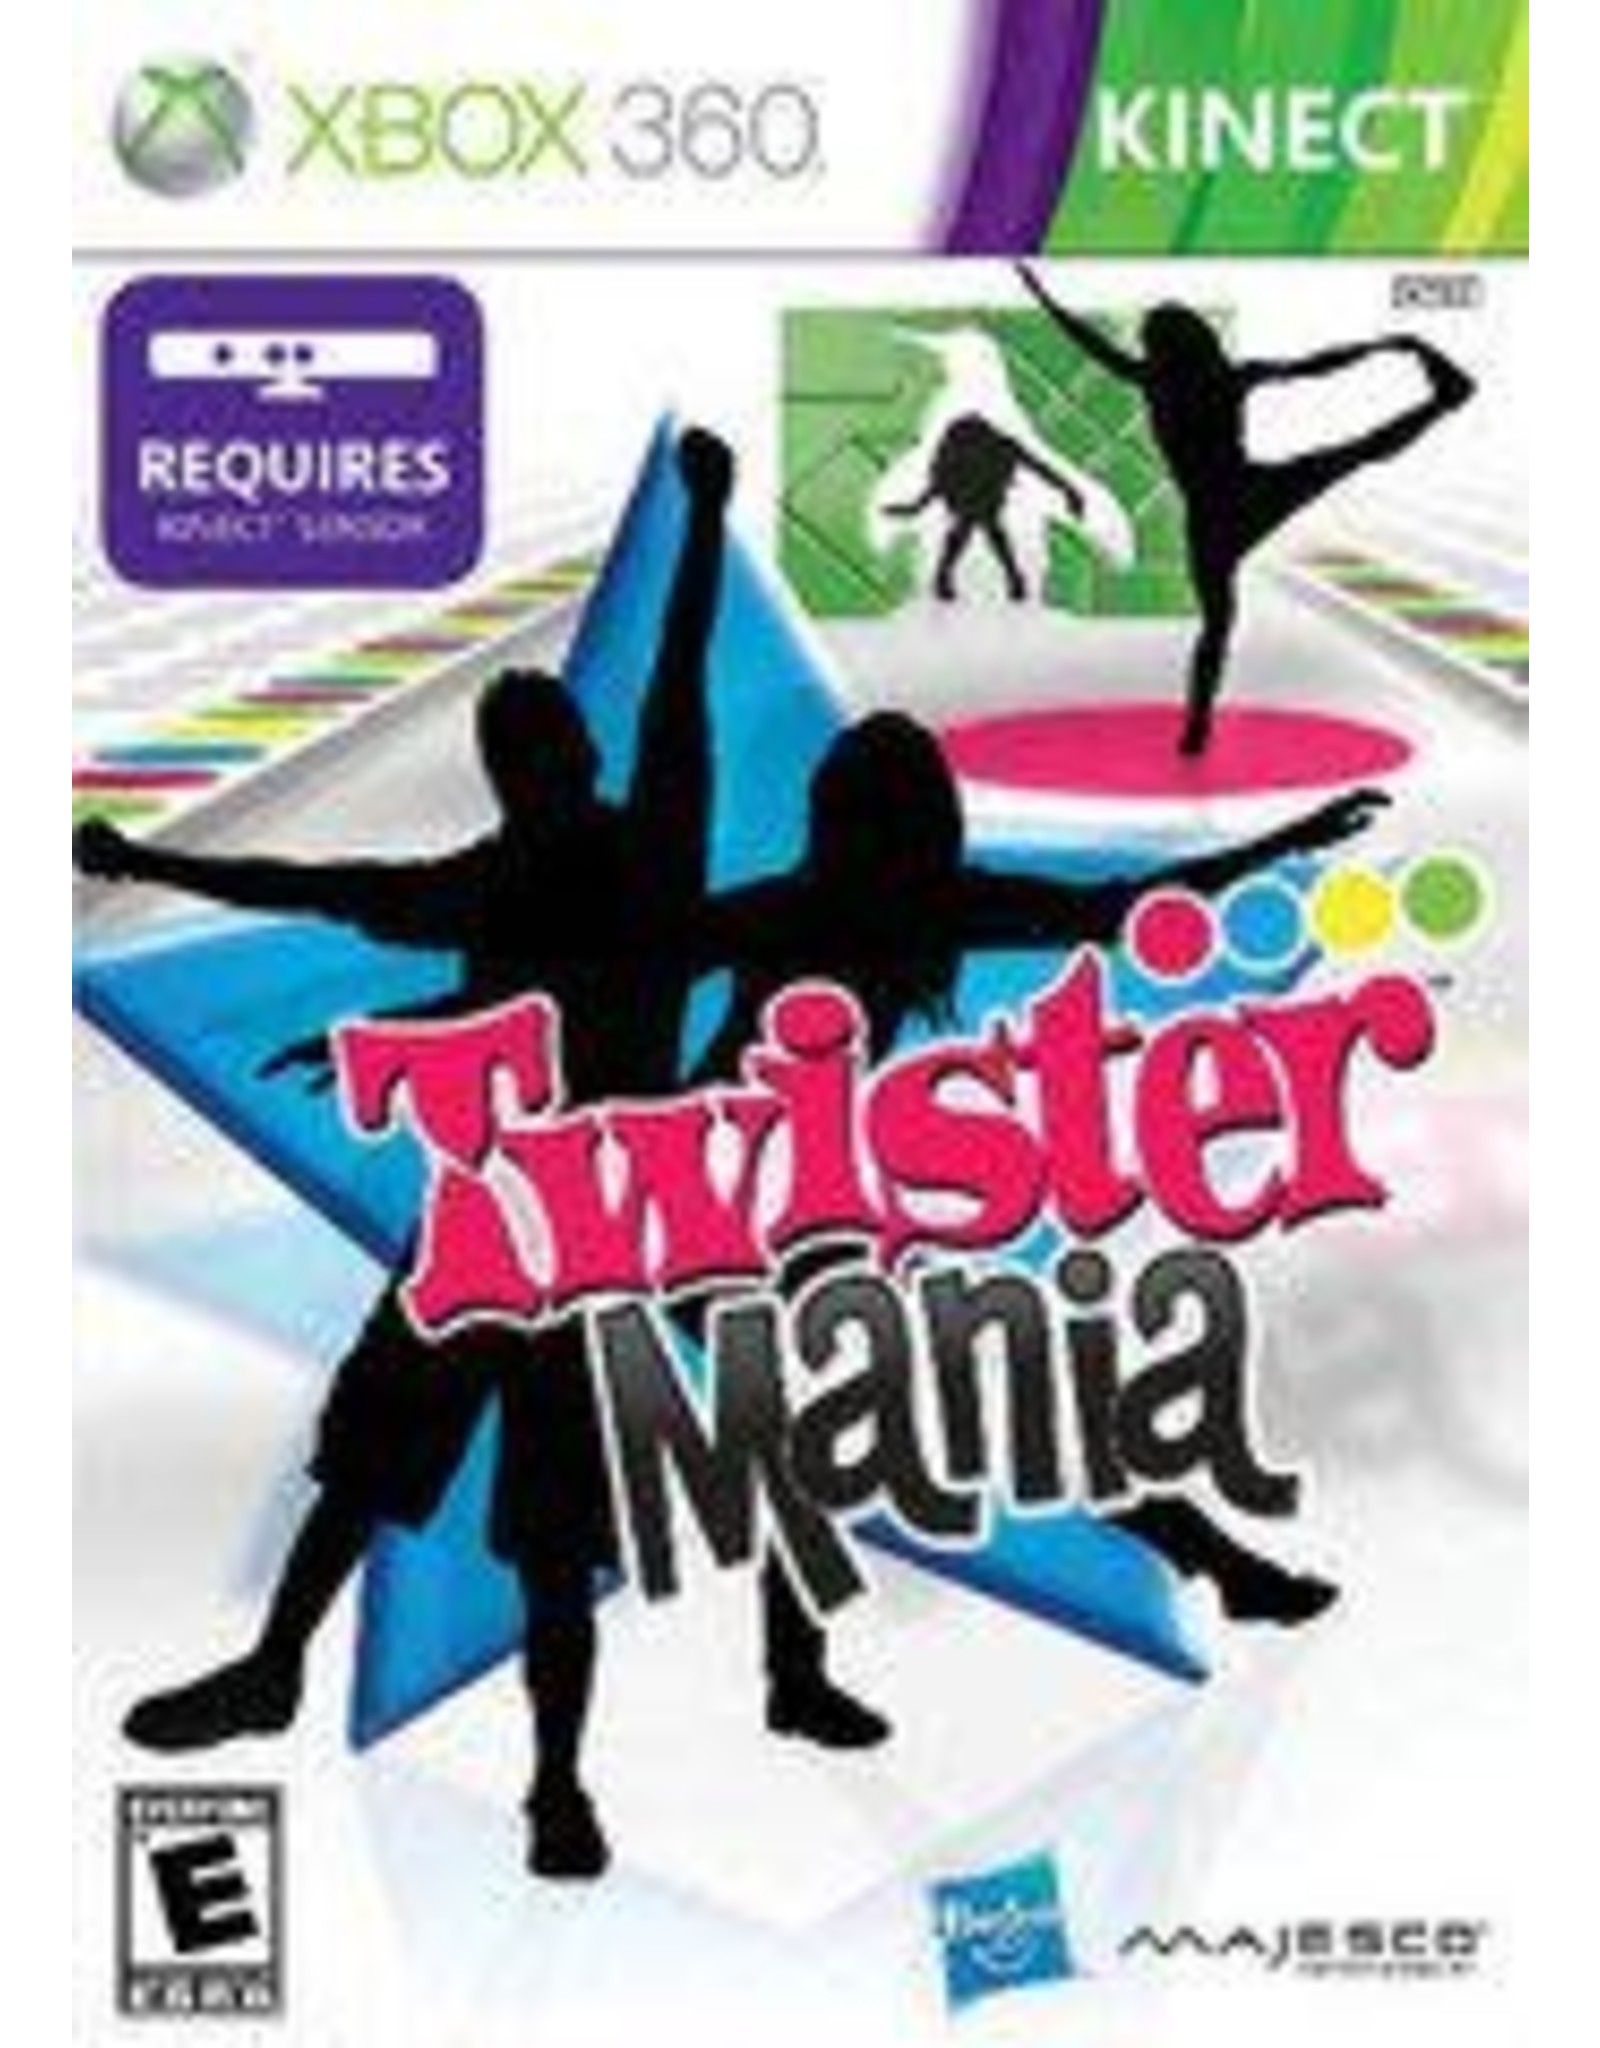 Xbox 360 Twister Mania (CiB)